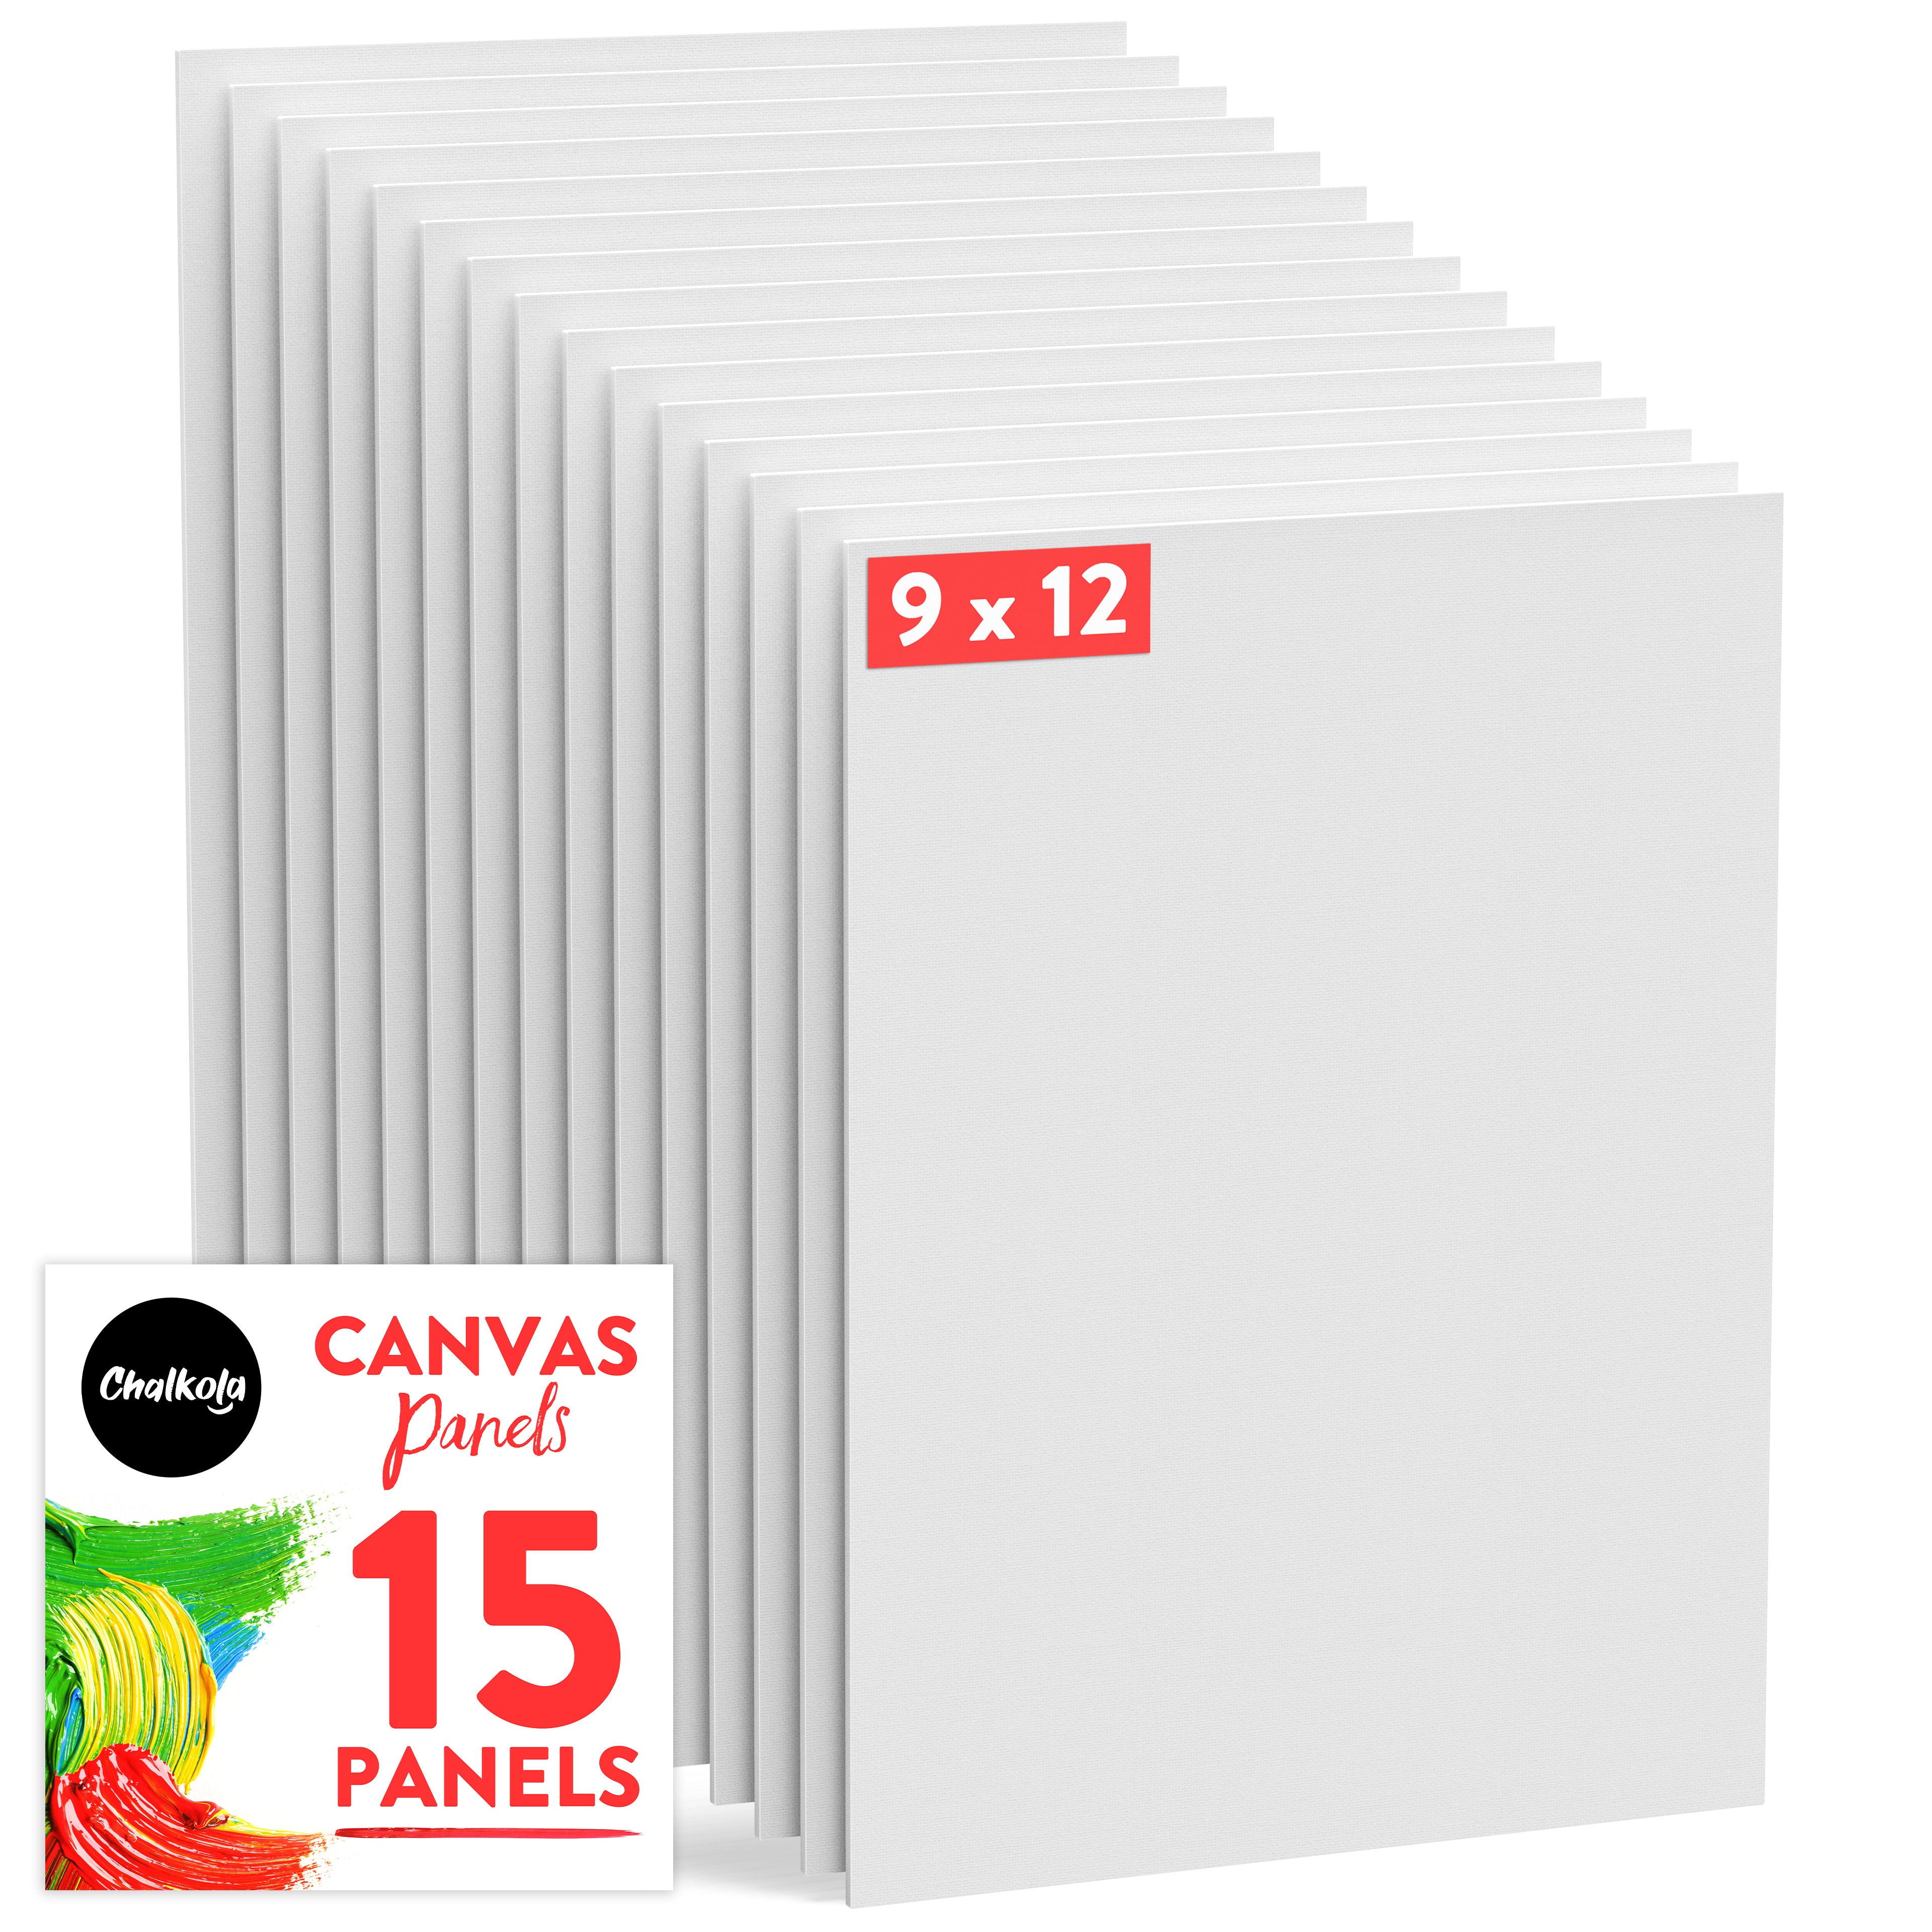 9x12 Canvas Panels – Play Arts Studios